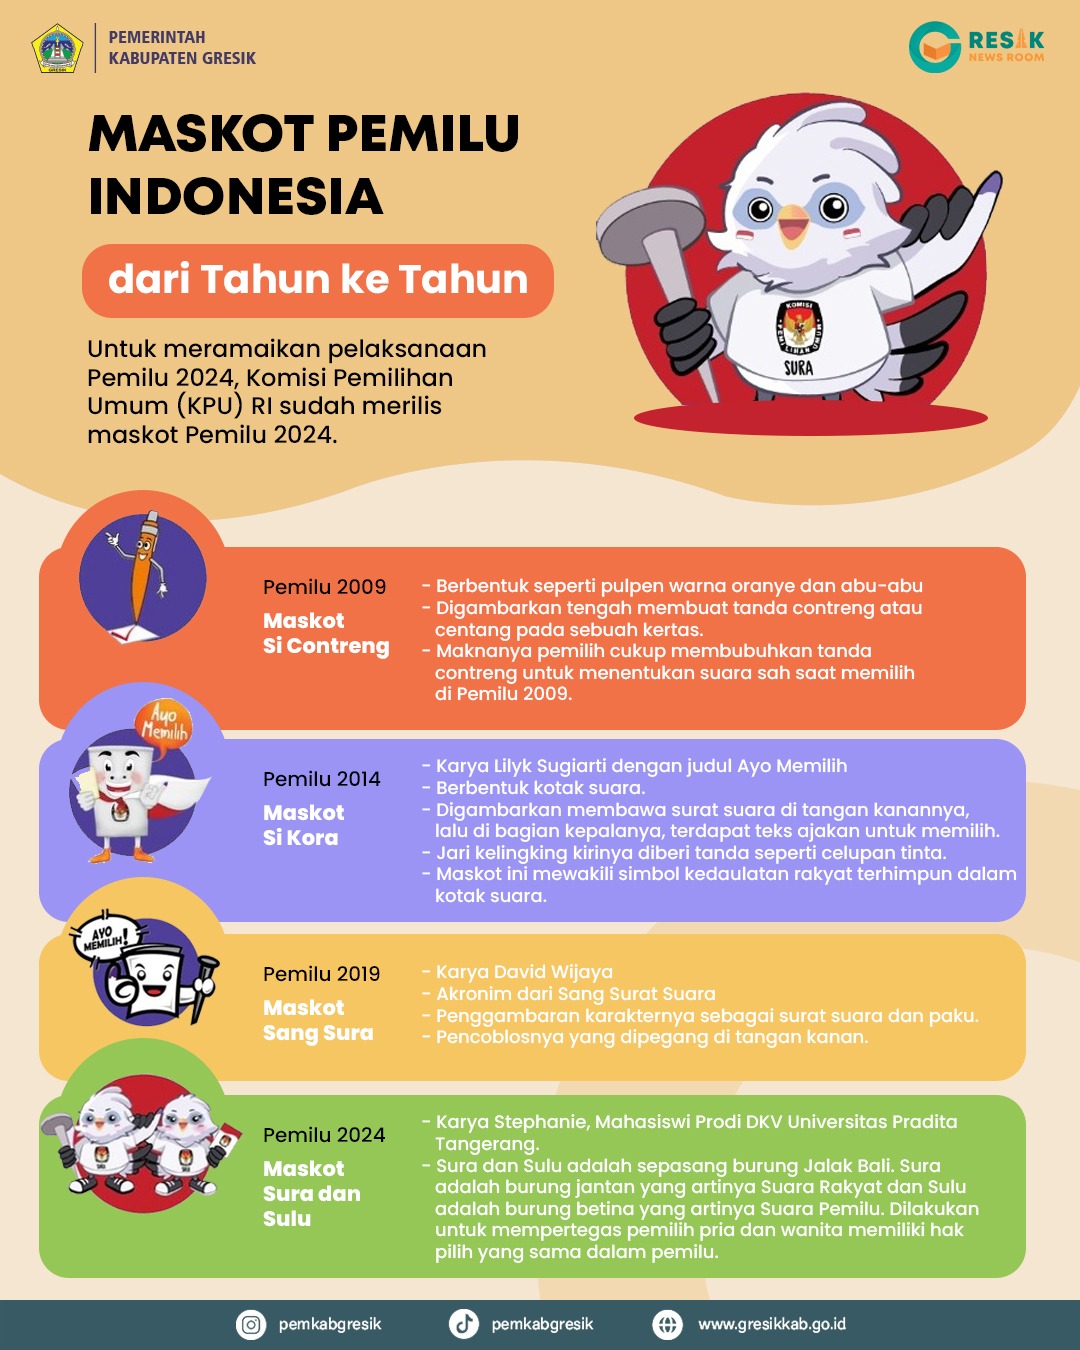 Maskot Pemilu Indonesia